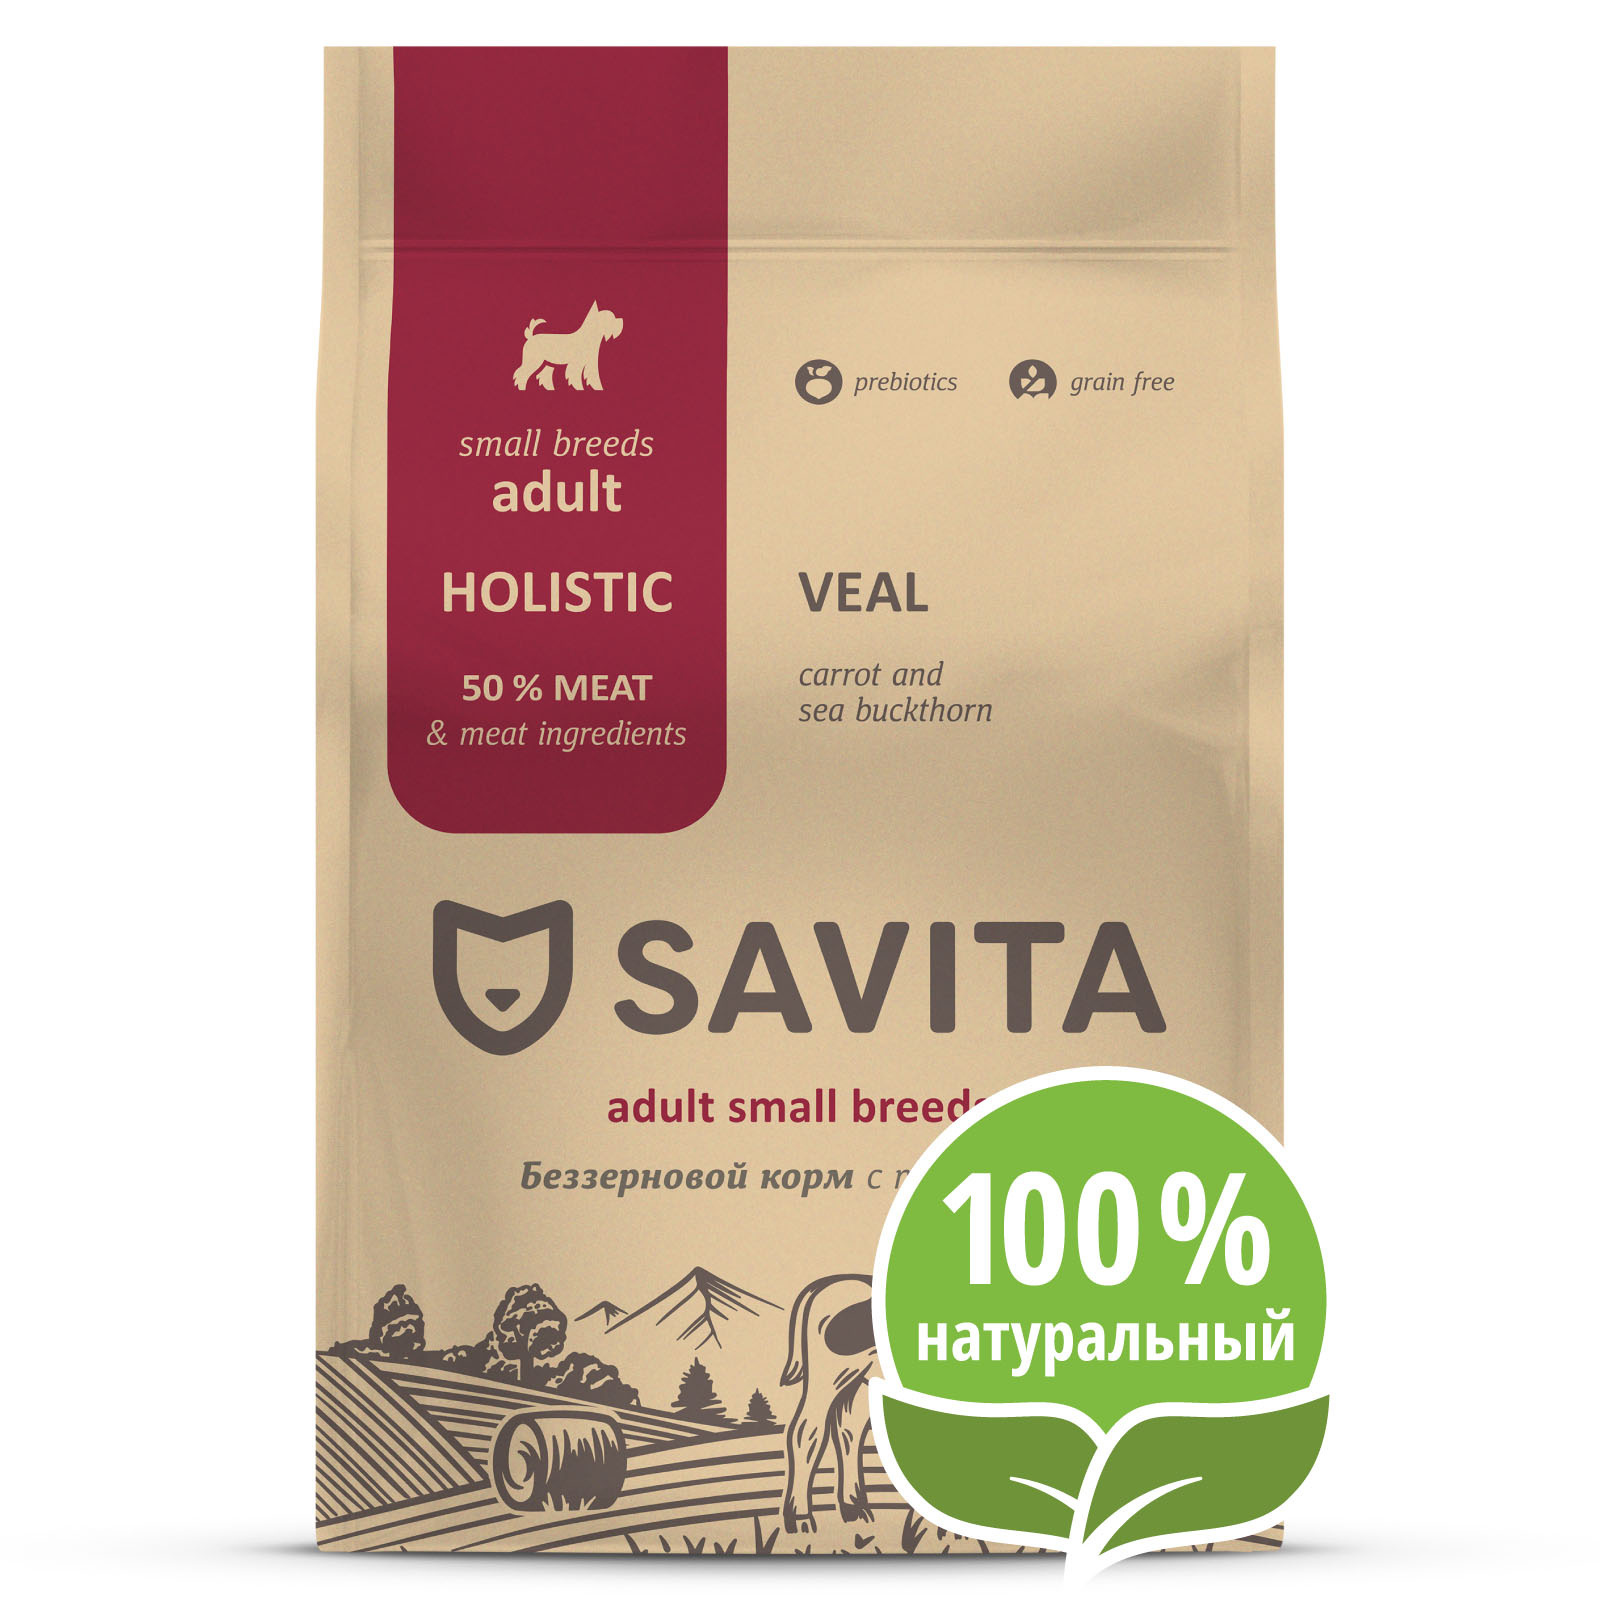 SAVITA беззерновой корм для собак малых пород с телятиной (4 кг) SAVITA беззерновой корм для собак малых пород с телятиной (4 кг) - фото 1